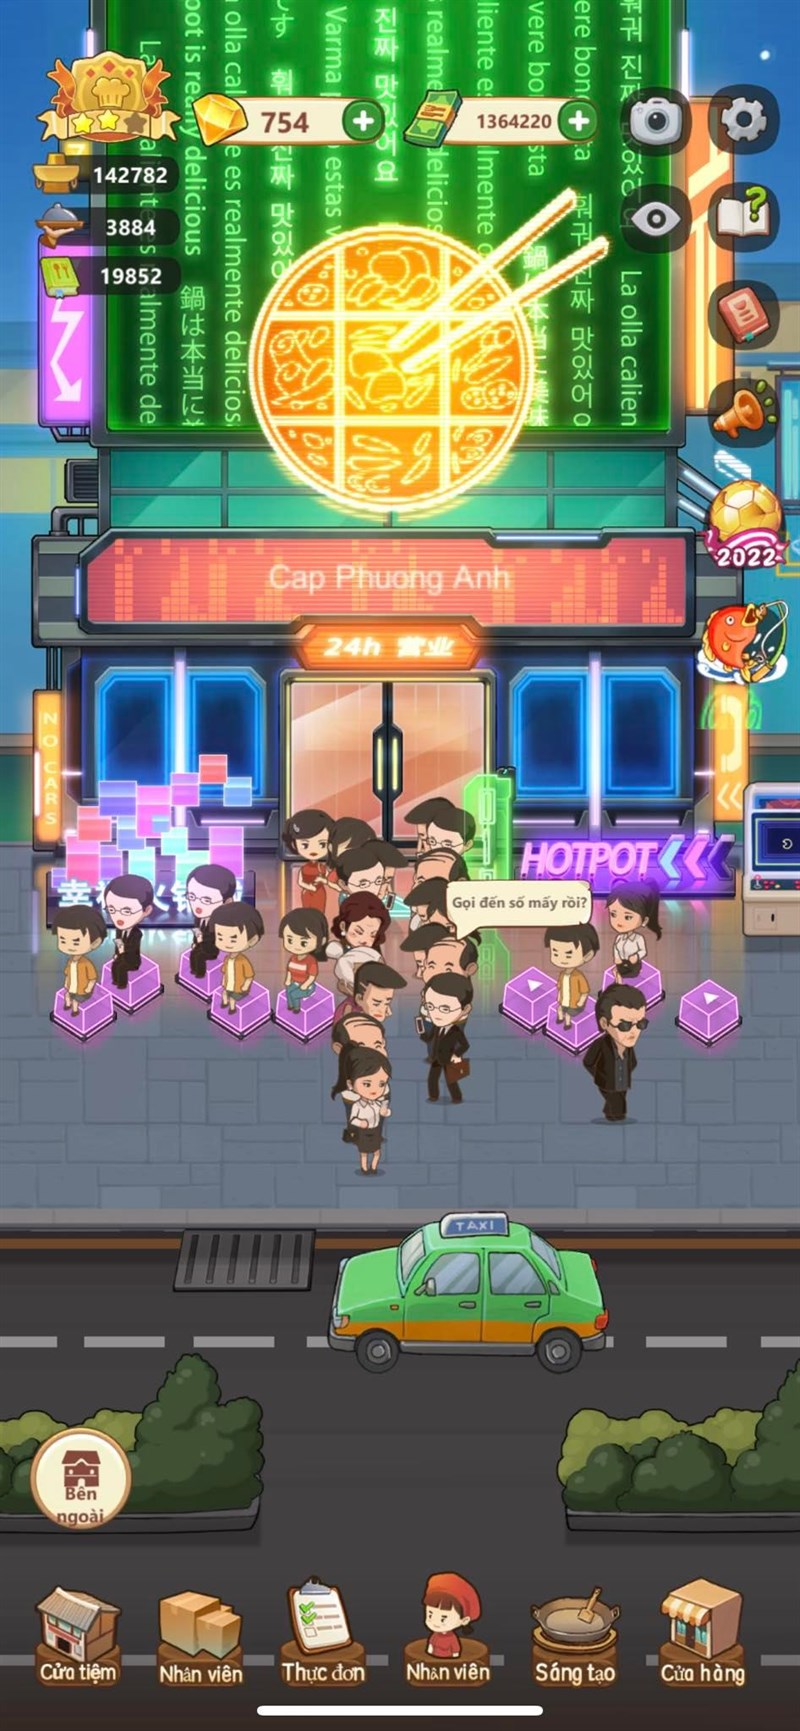 Giới thiệu game Tiệm Lẩu Đường Hạnh Phúc